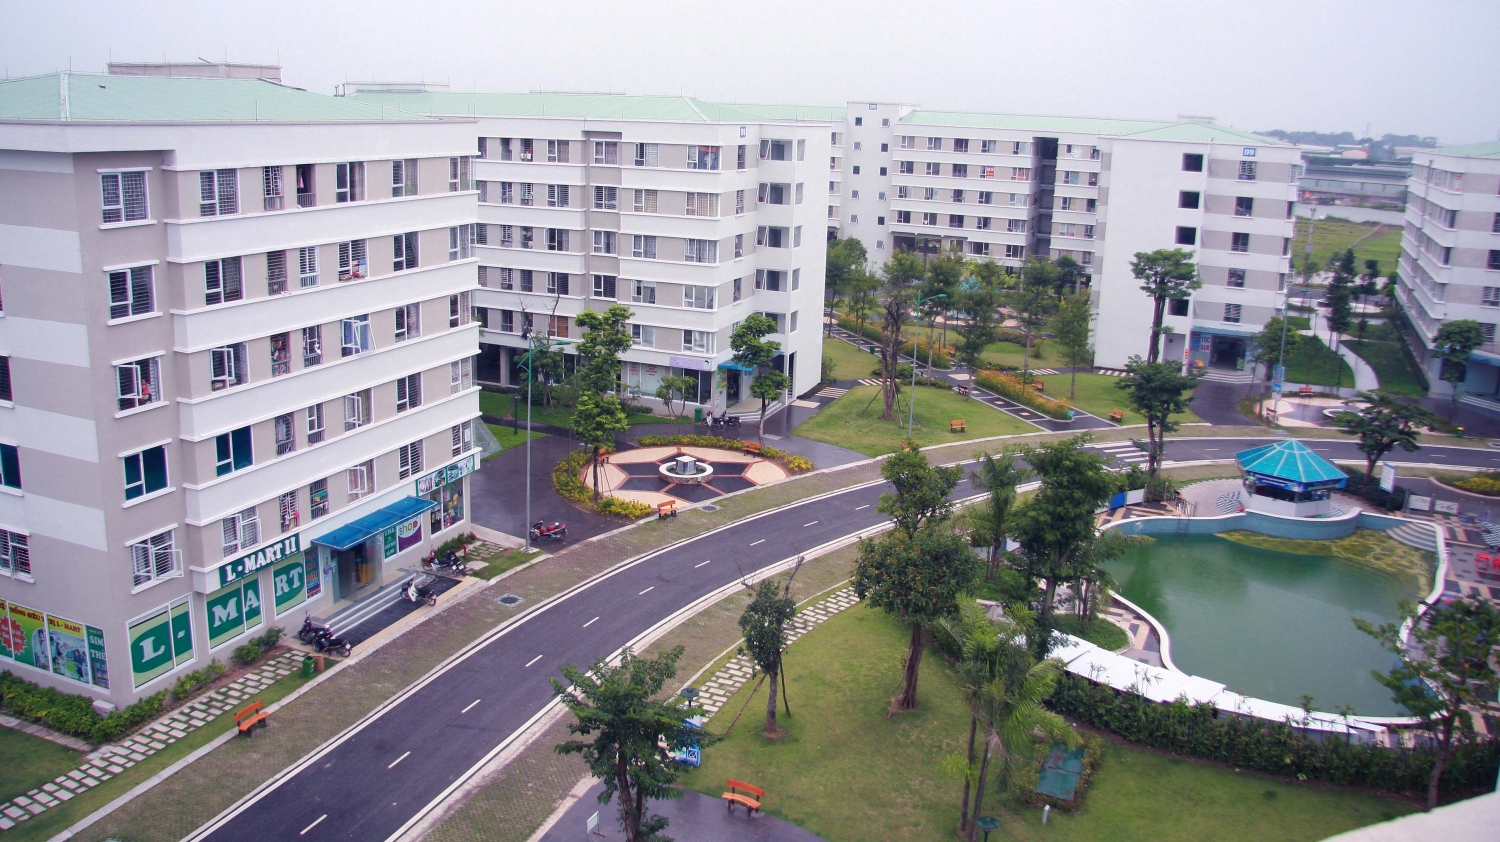 Tin bất động sản ngày 13/5: Vinhomes công bố làm nhà ở xã hội dưới 1 tỷ đồng tại Hà Nội và TP HCM